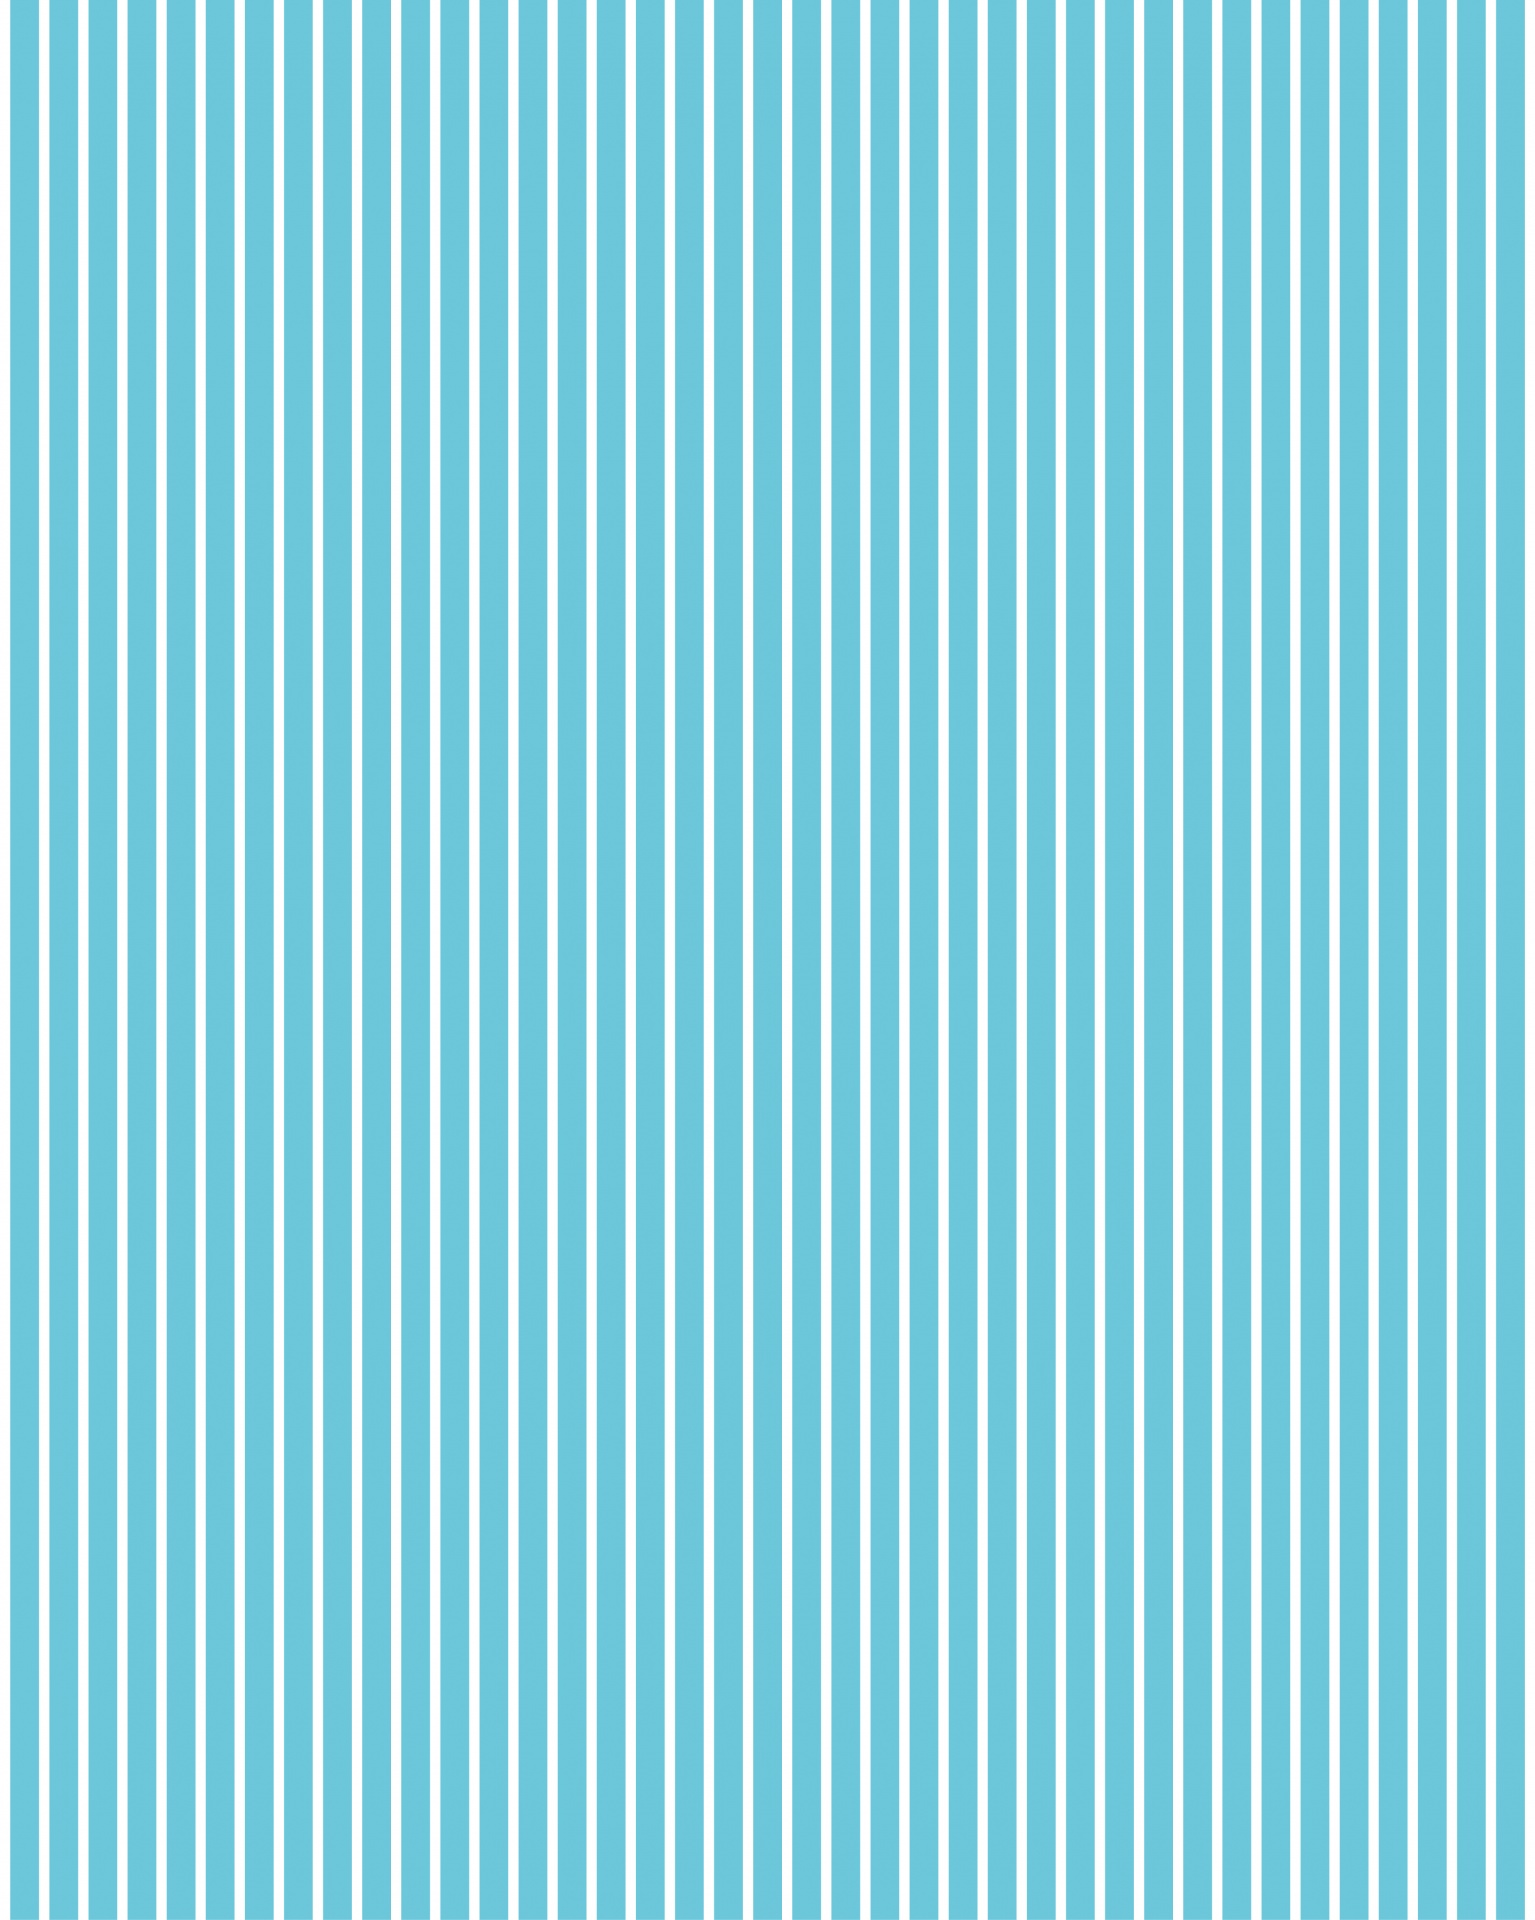 Stripes Stripe Striped Free Photo - Wrapping Paper - HD Wallpaper 